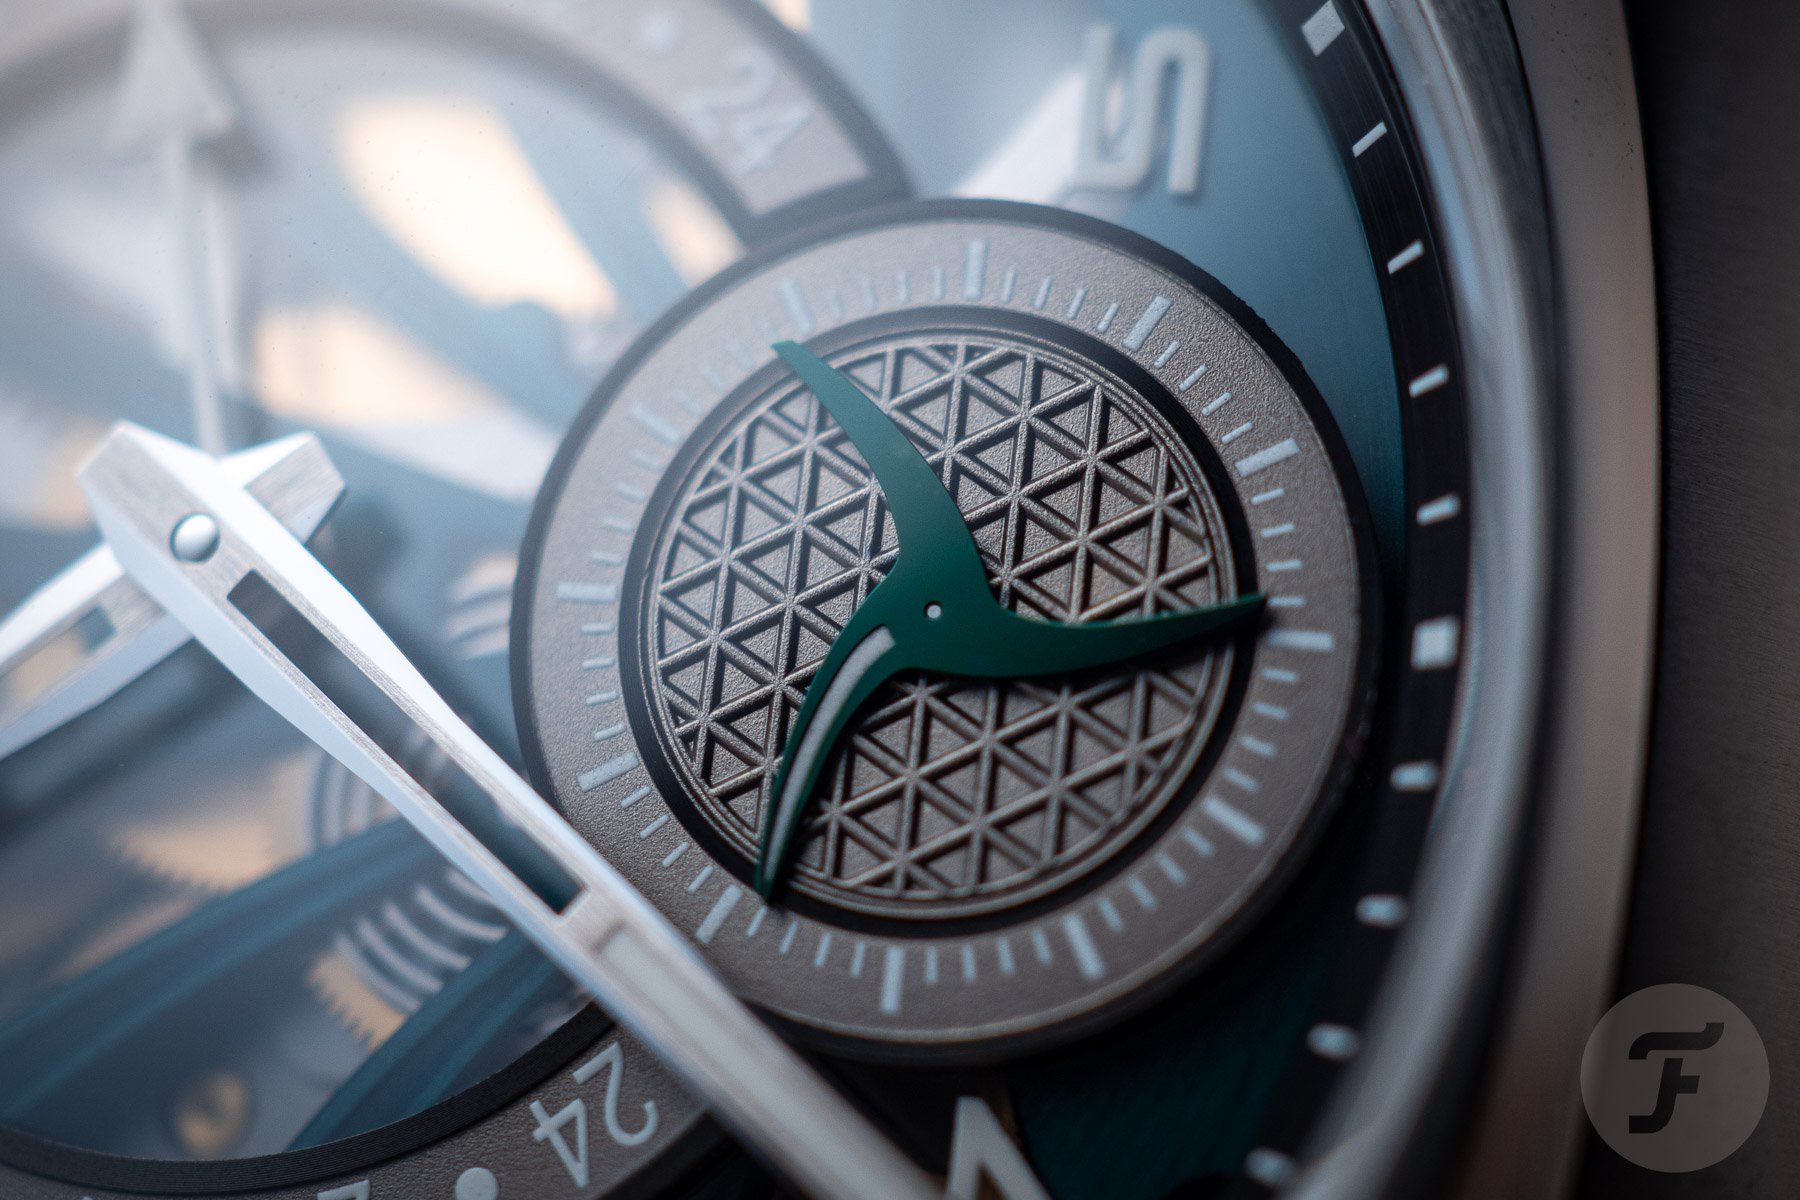 Обзор многофункциональных часов Cyrus Klepcys GMT Palm Green And Ocean Blue